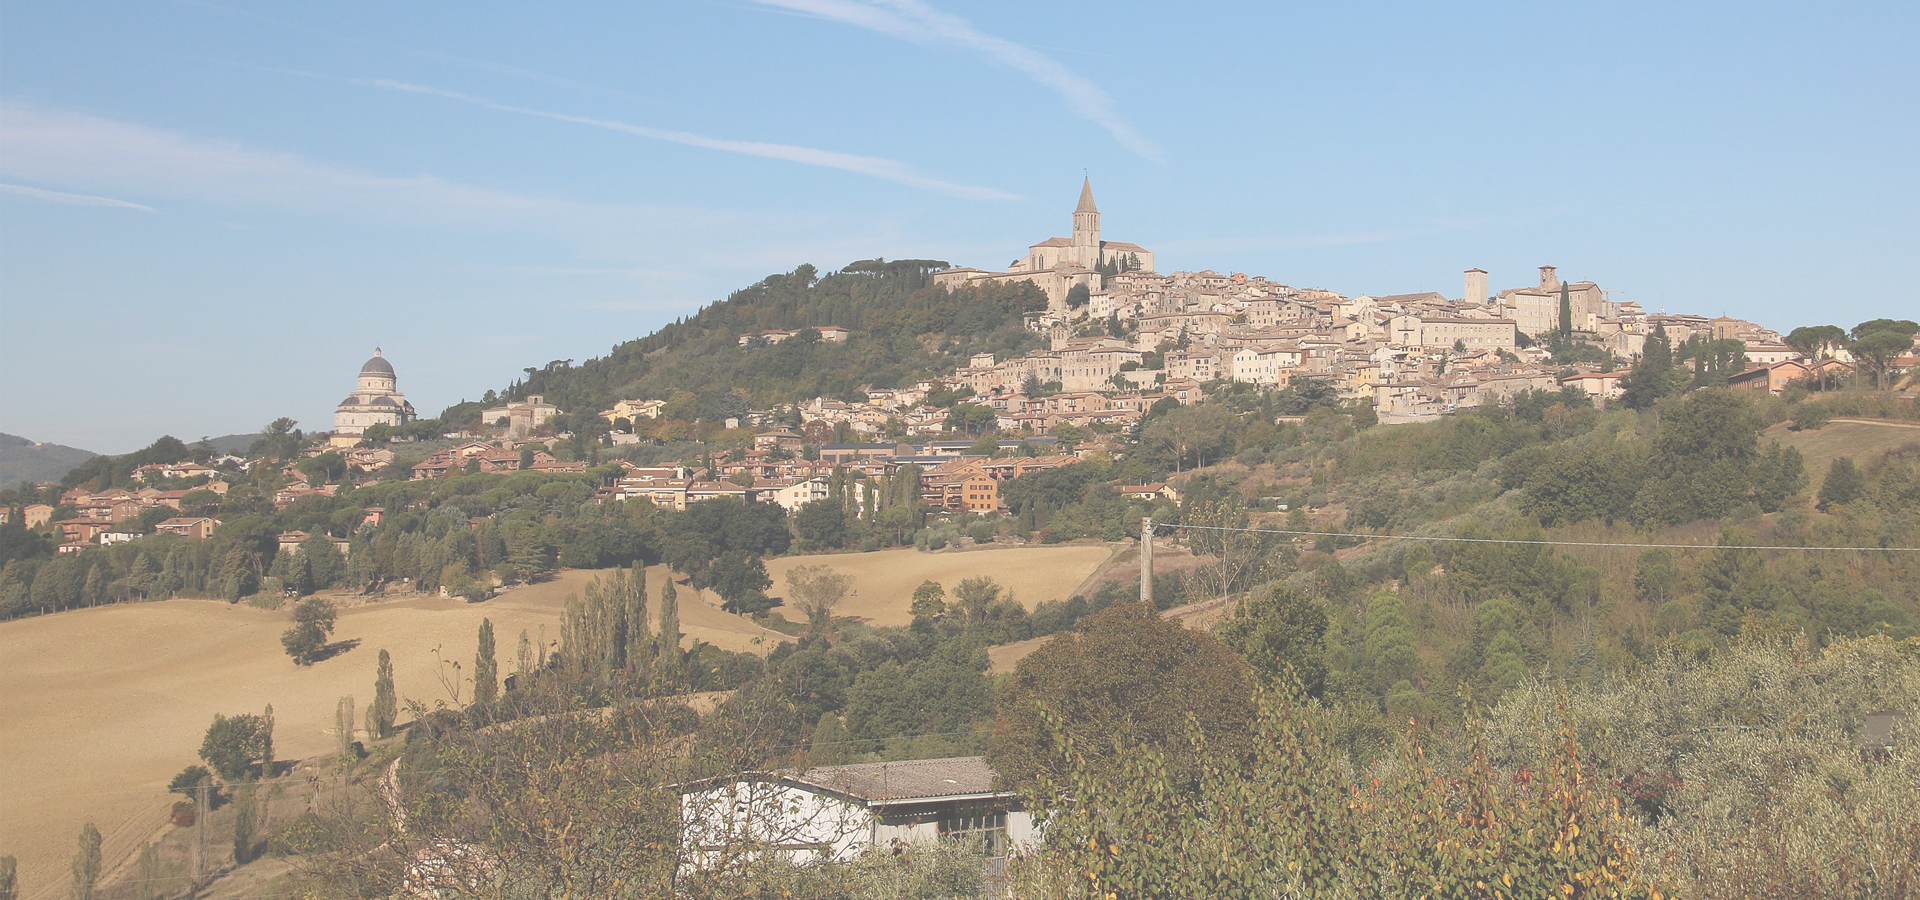 <b>Todi, Province of Perugia, Umbria Region, Italy</b>